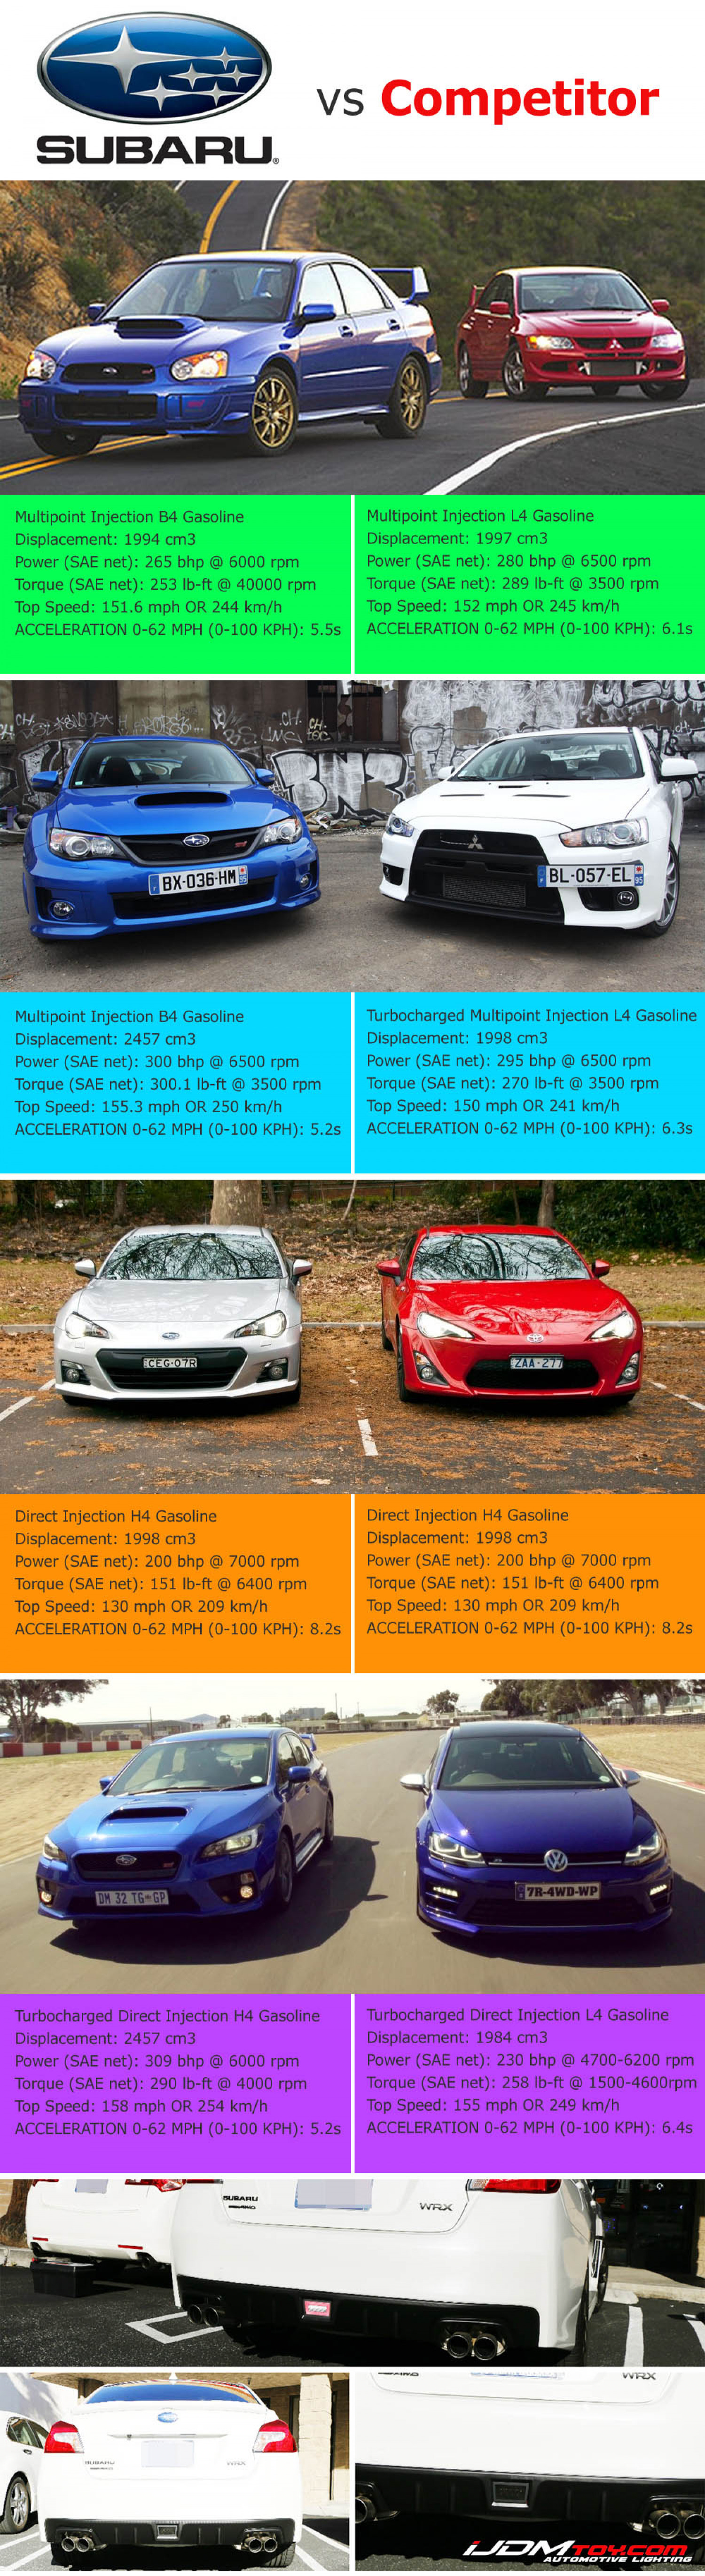 Game On: Subaru Versus Competitors Infographic